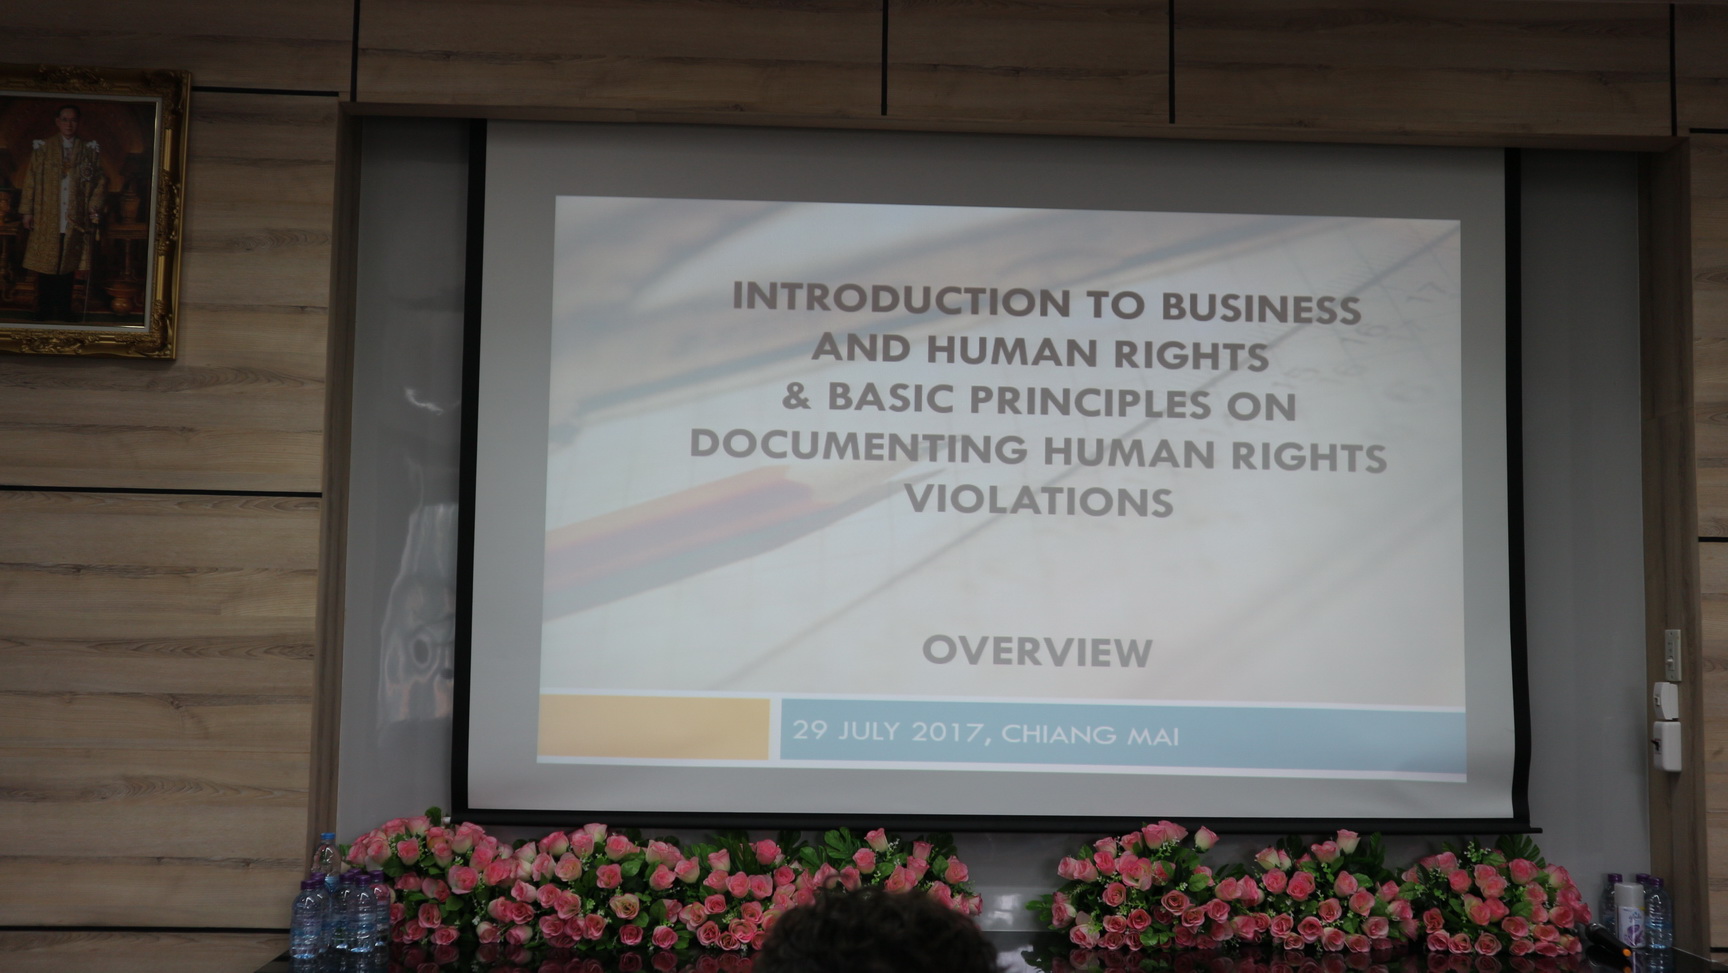 เปิดโครงการ บทนำสู่ “ธุรกิจและสิทธิมนุษยชน” และการเก็บข้อมูลการละเมิดสิทธิมนุษยชน